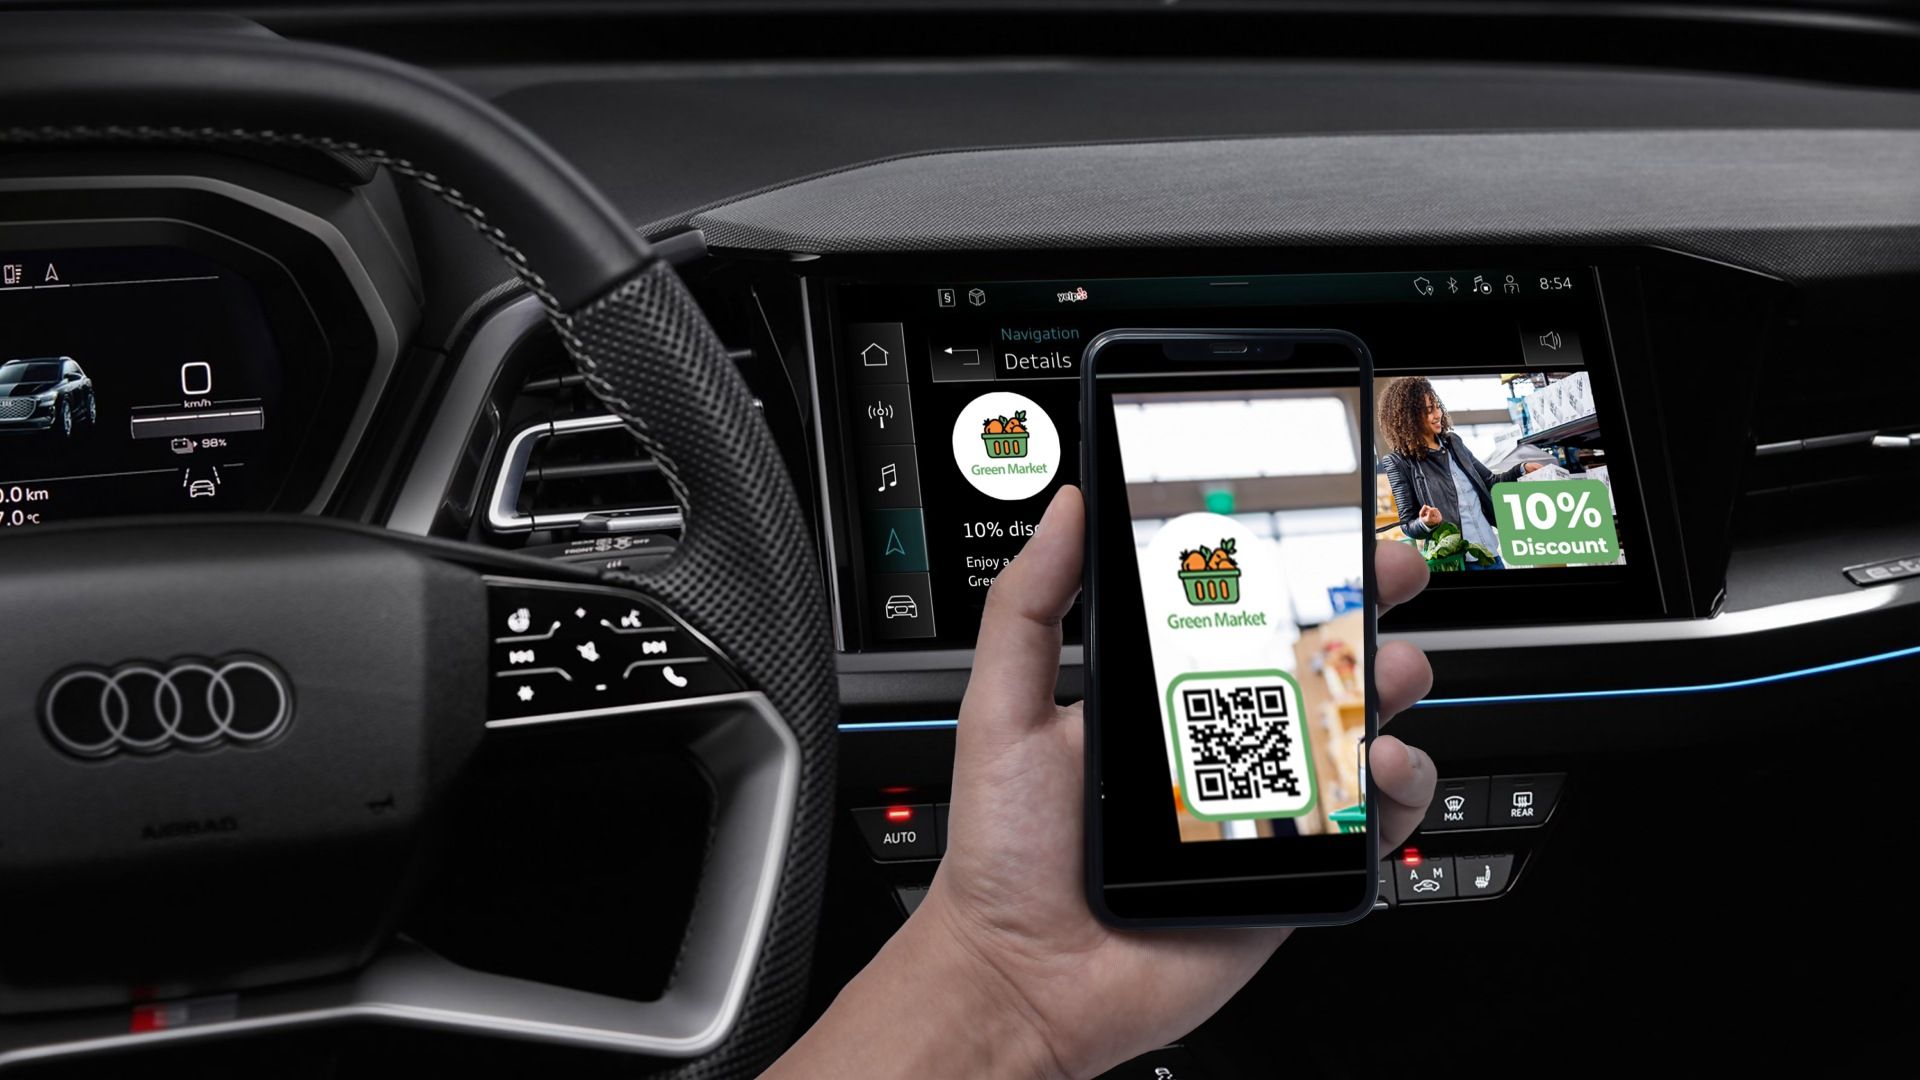 Le smartphone scanne l'offre de POI sur le MMI Audi.